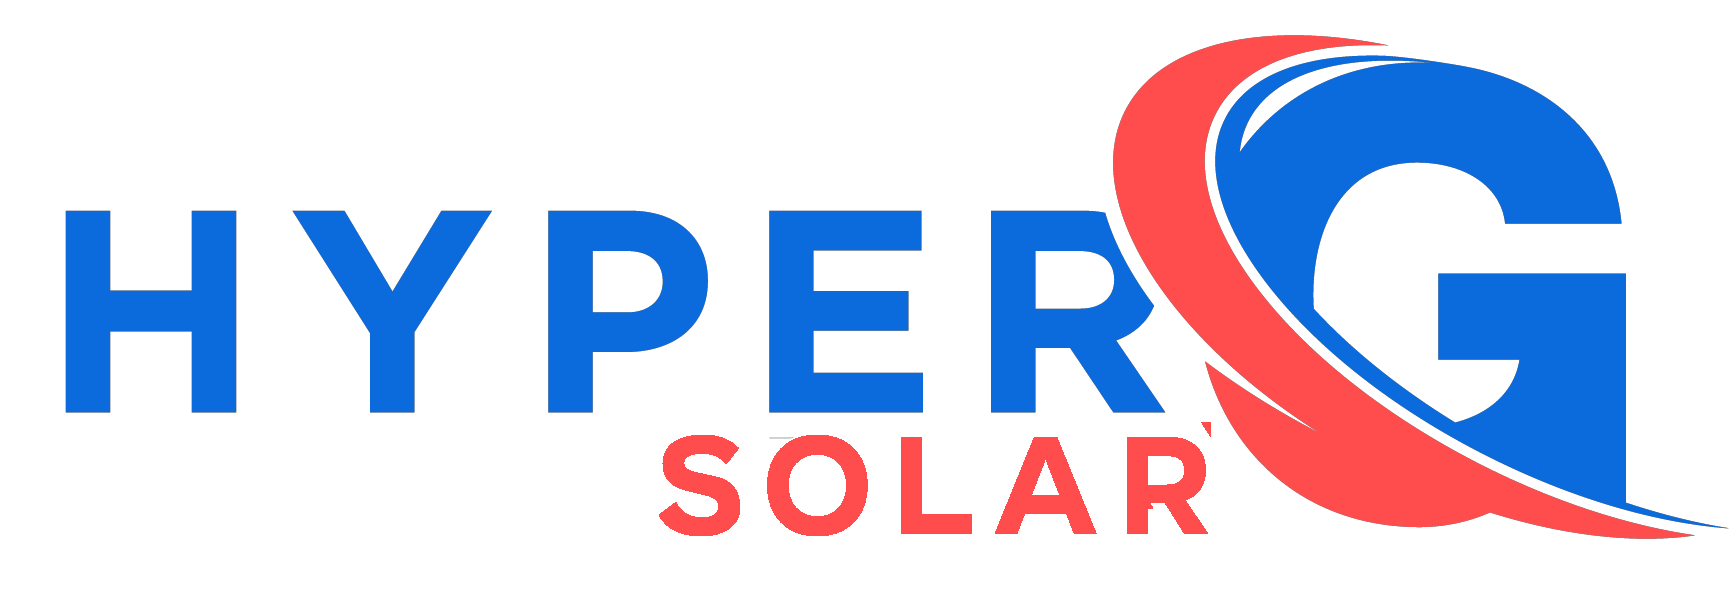 HyperG Media (Solar) 